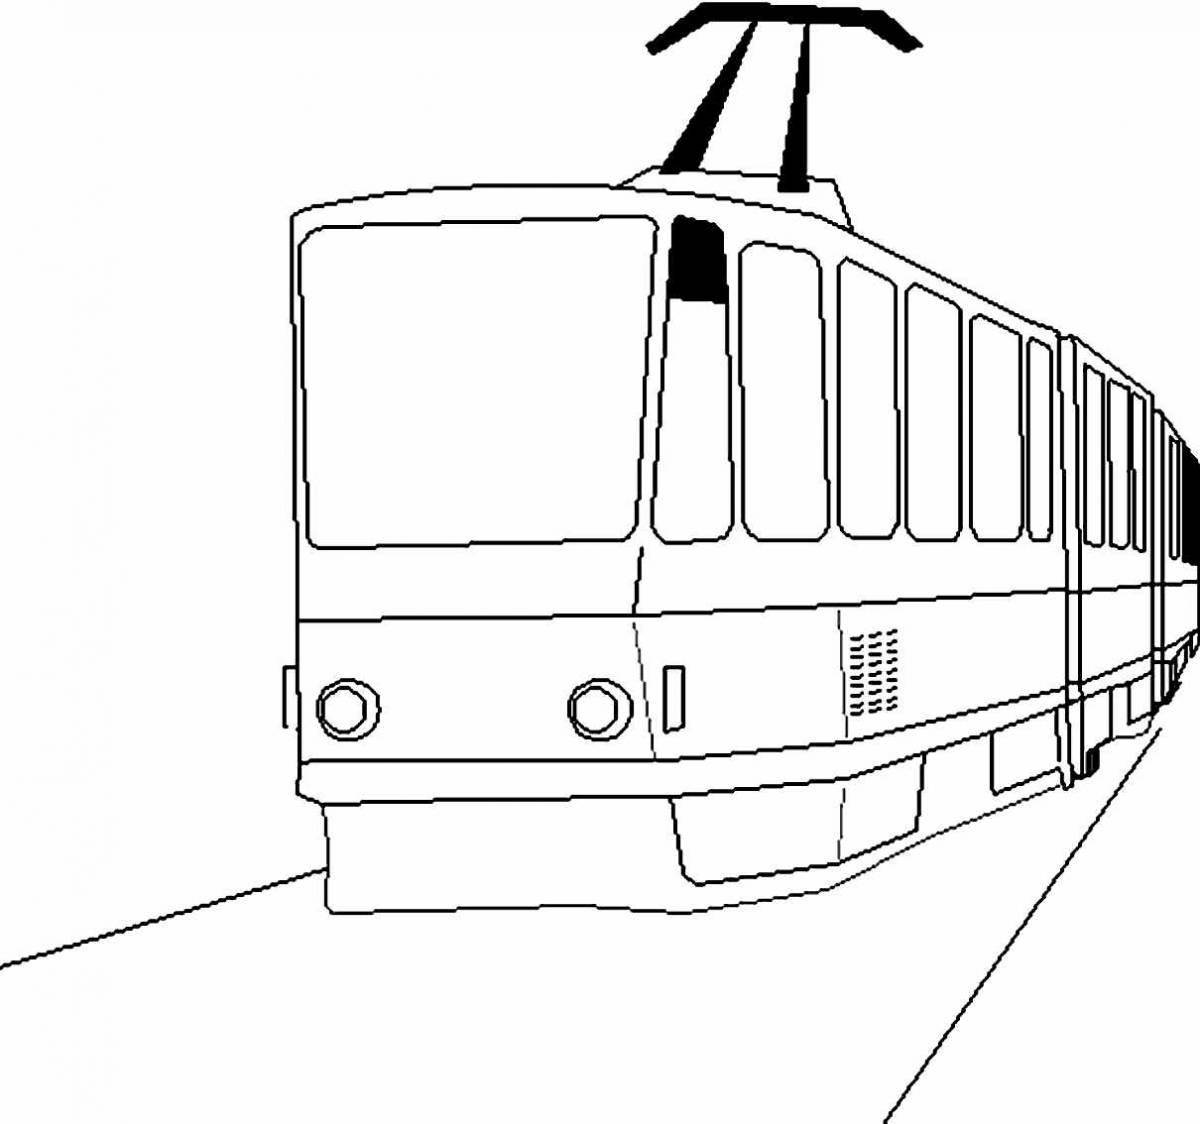 Увлекательная раскраска трамвая для детей 4-5 лет